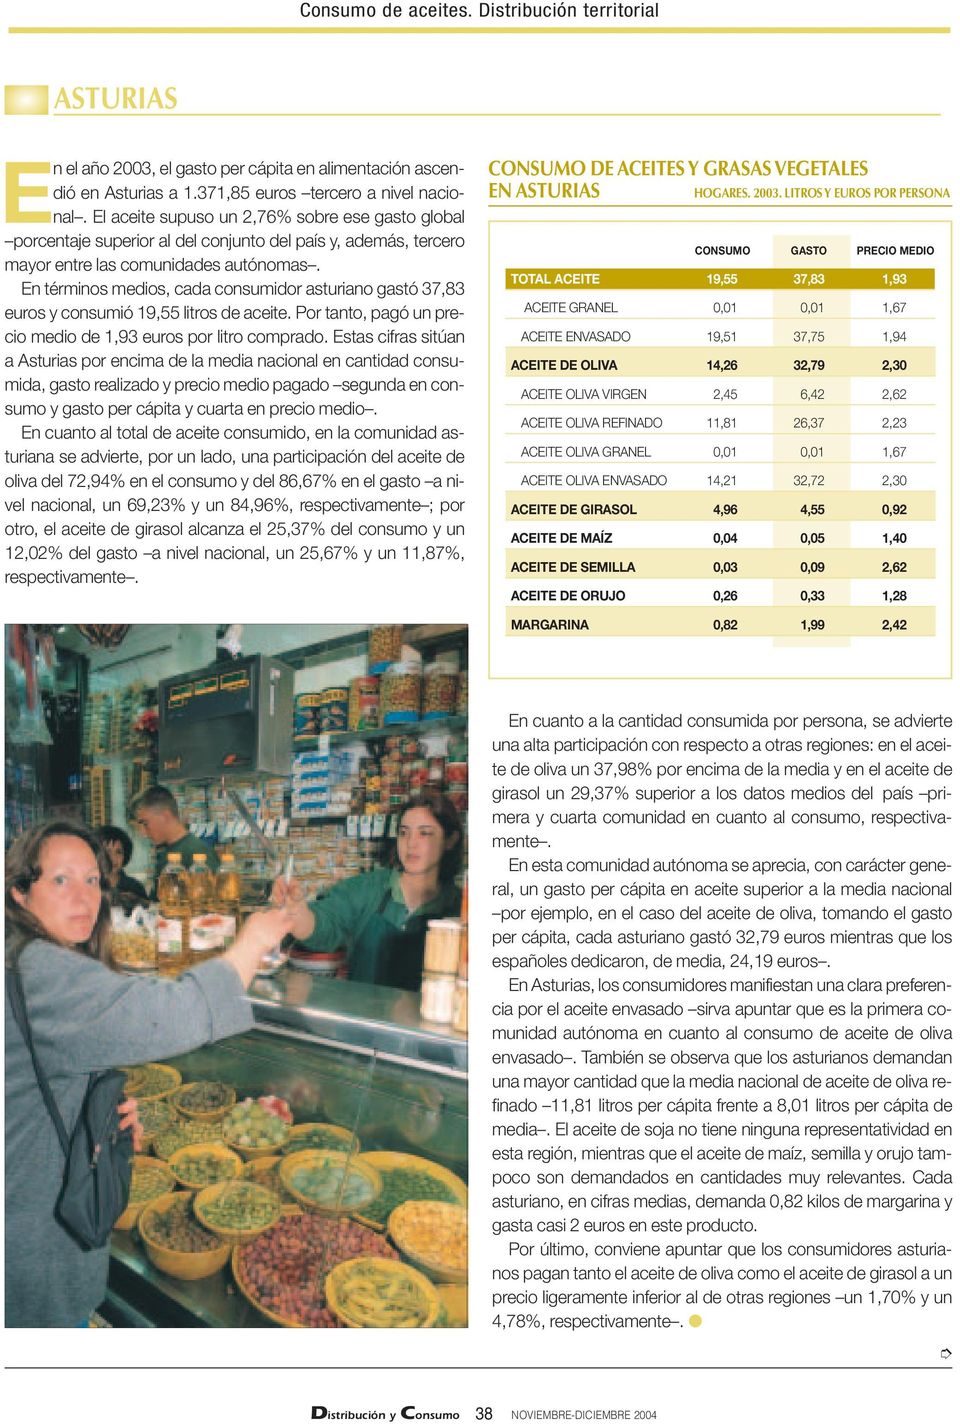 En términos medios, cada consumidor asturiano gastó 37,83 euros y consumió 19,55 litros de aceite. Por tanto, pagó un precio medio de 1,93 euros por litro comprado.